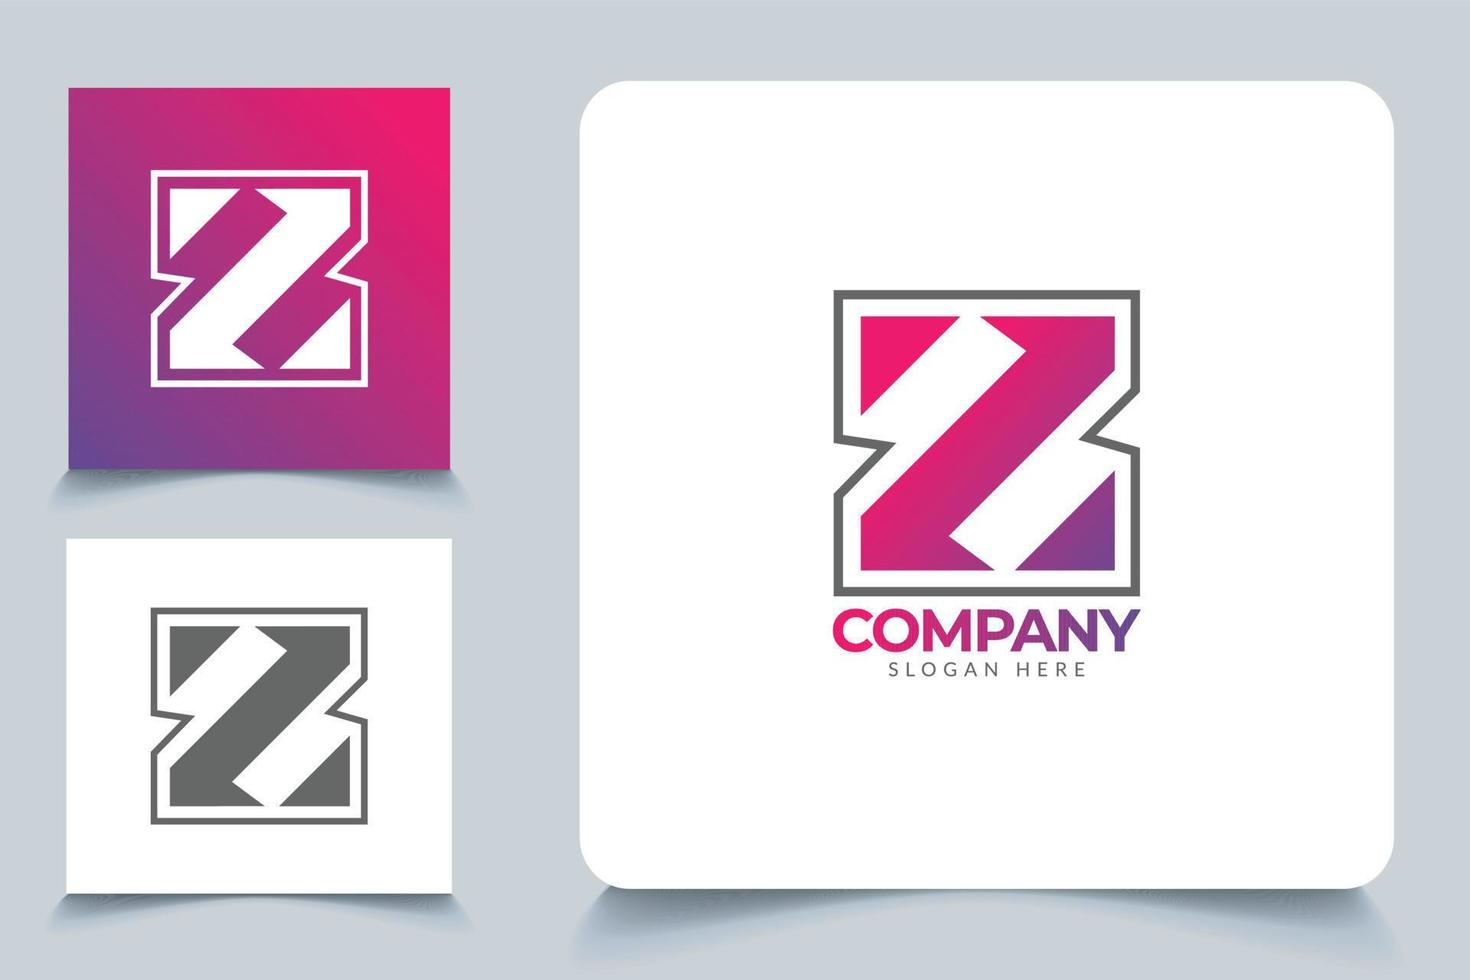 buchstabe z logo template branding design und kreatives konzept. kostenlose Download-Vektordatei. vektor